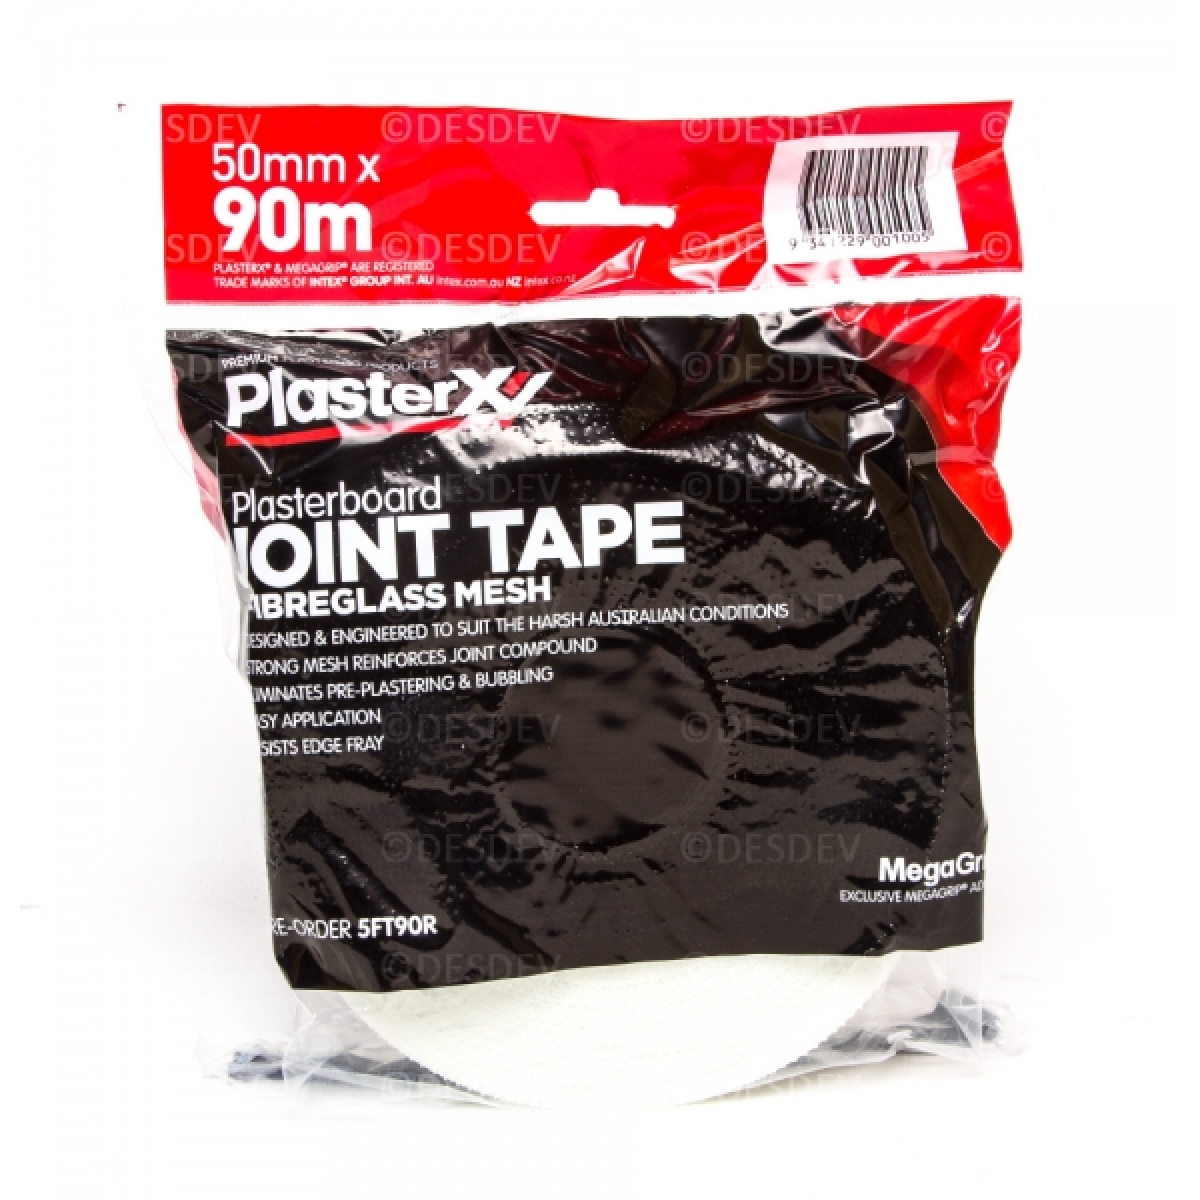 PlasterX 50mm x 90m MegaGrip Fiberglass Joint Tape